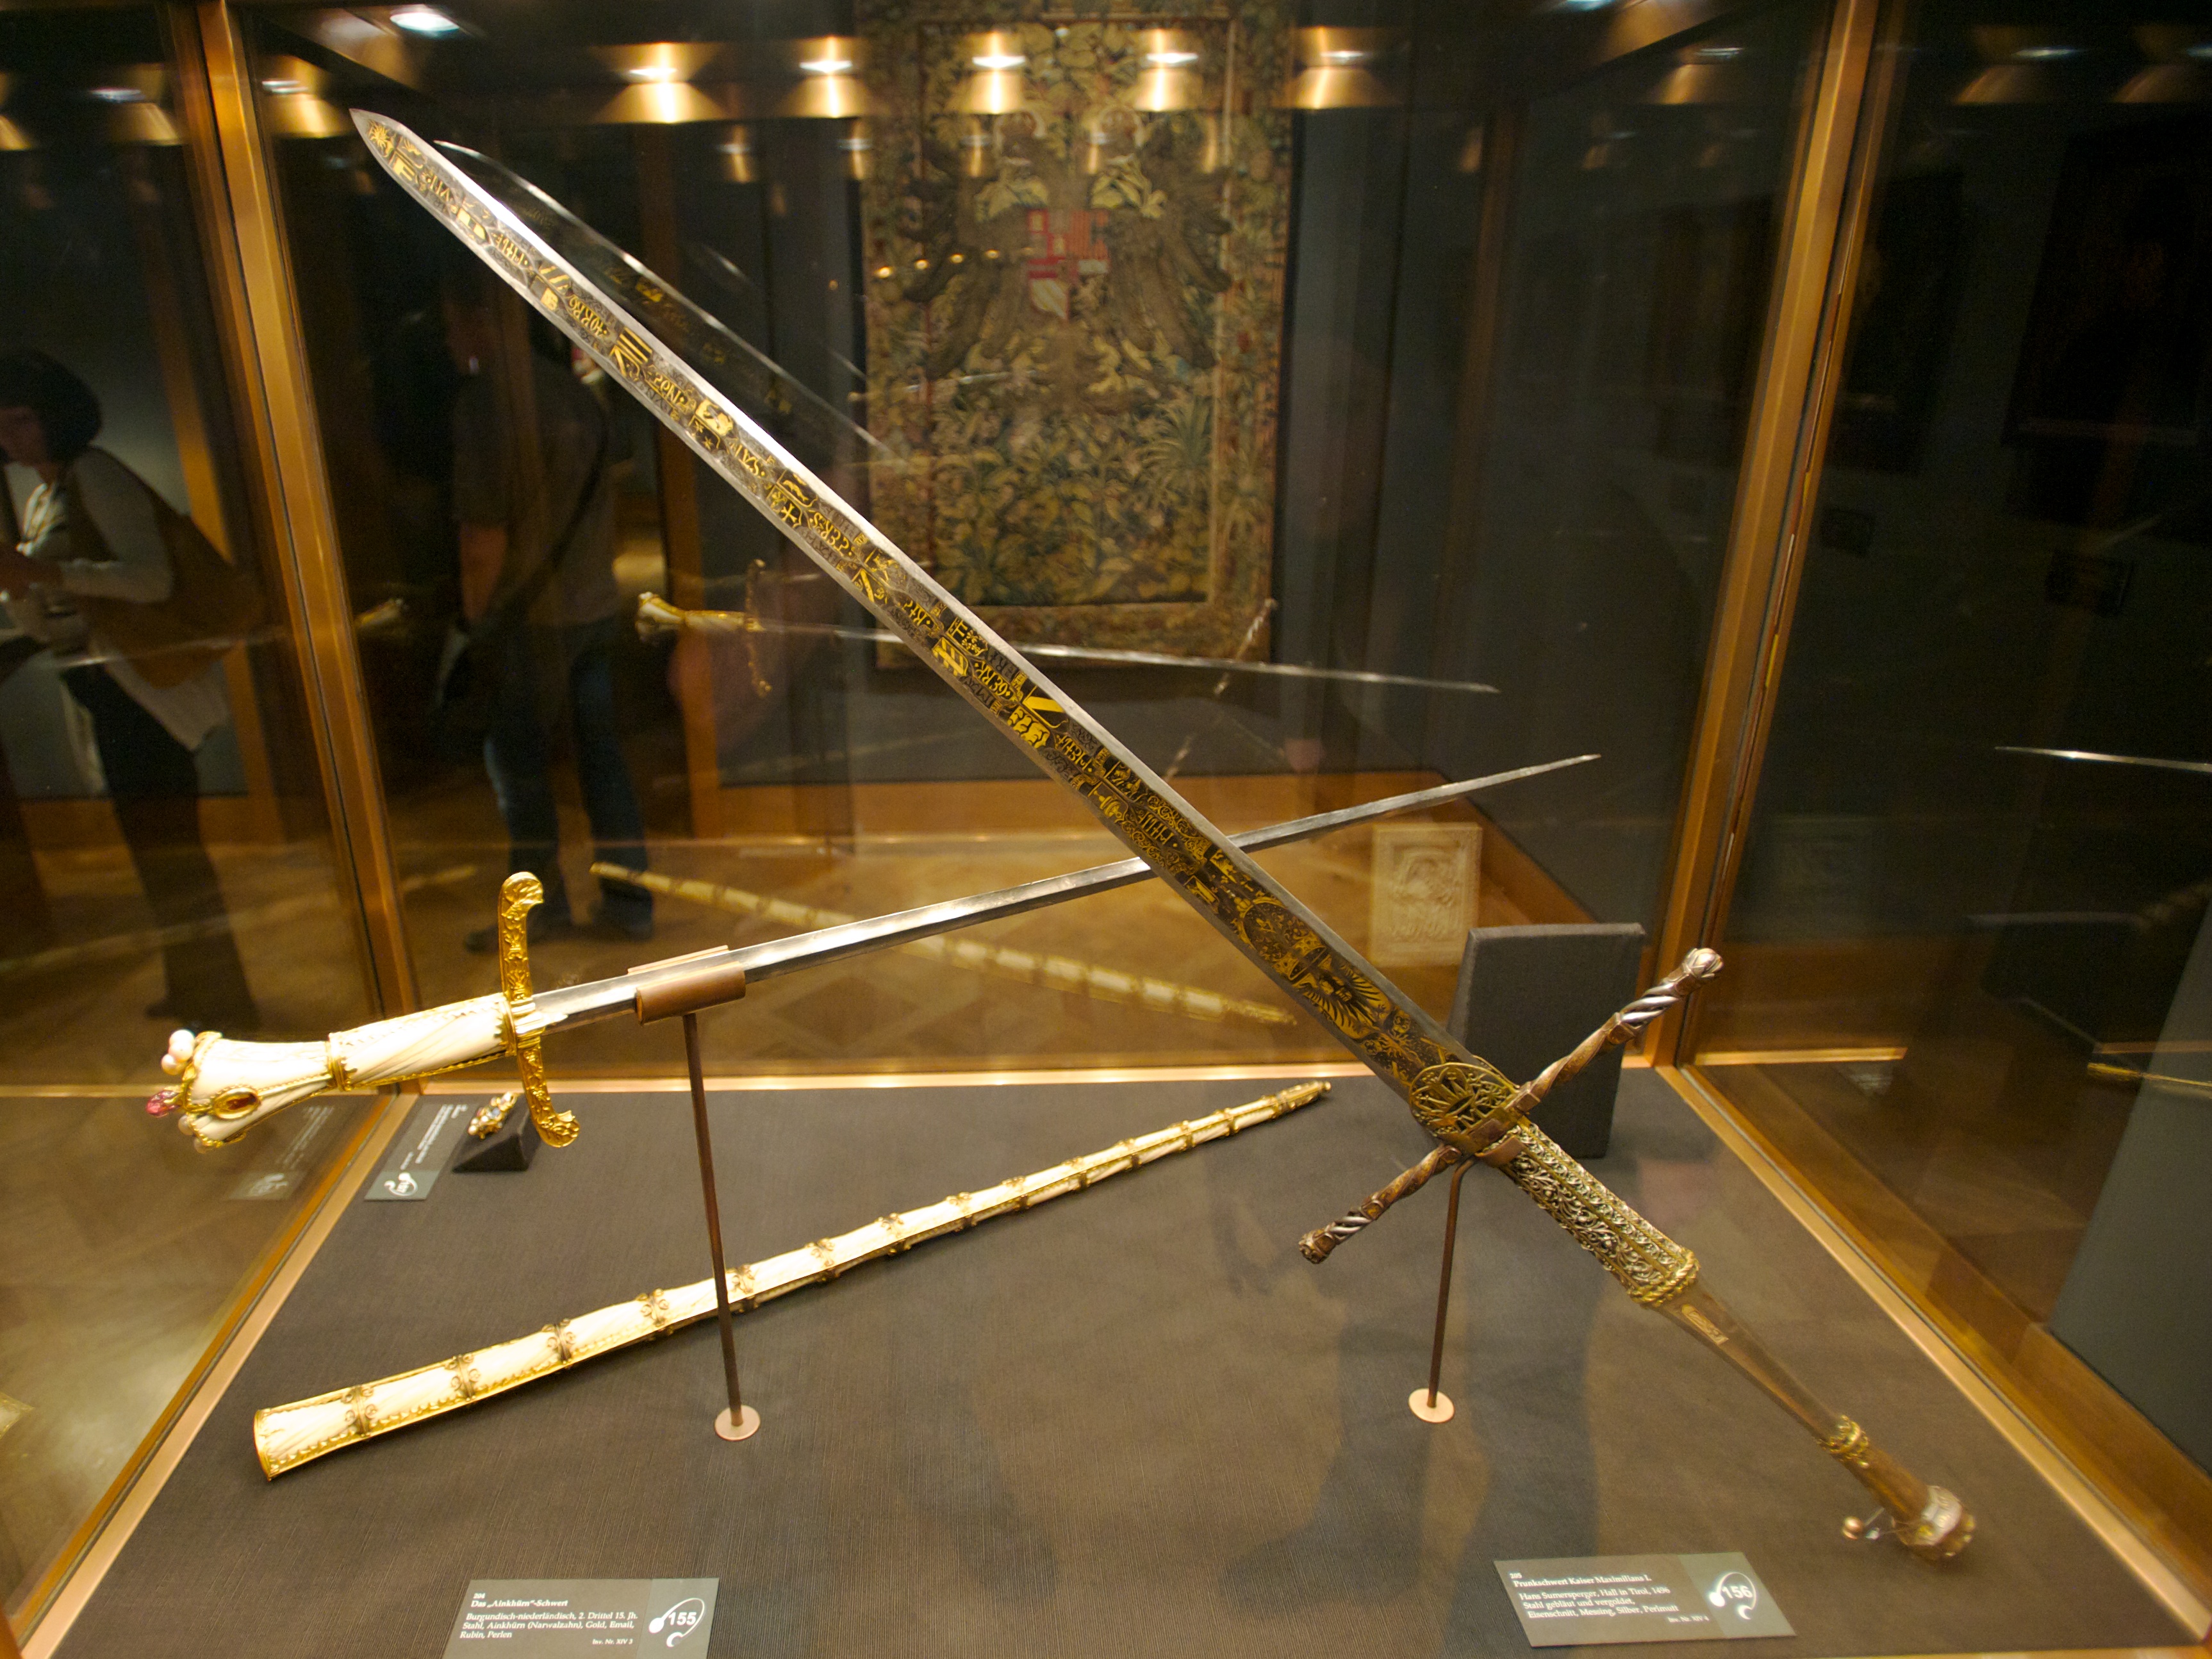 The Sword of Emperor Maximilian I